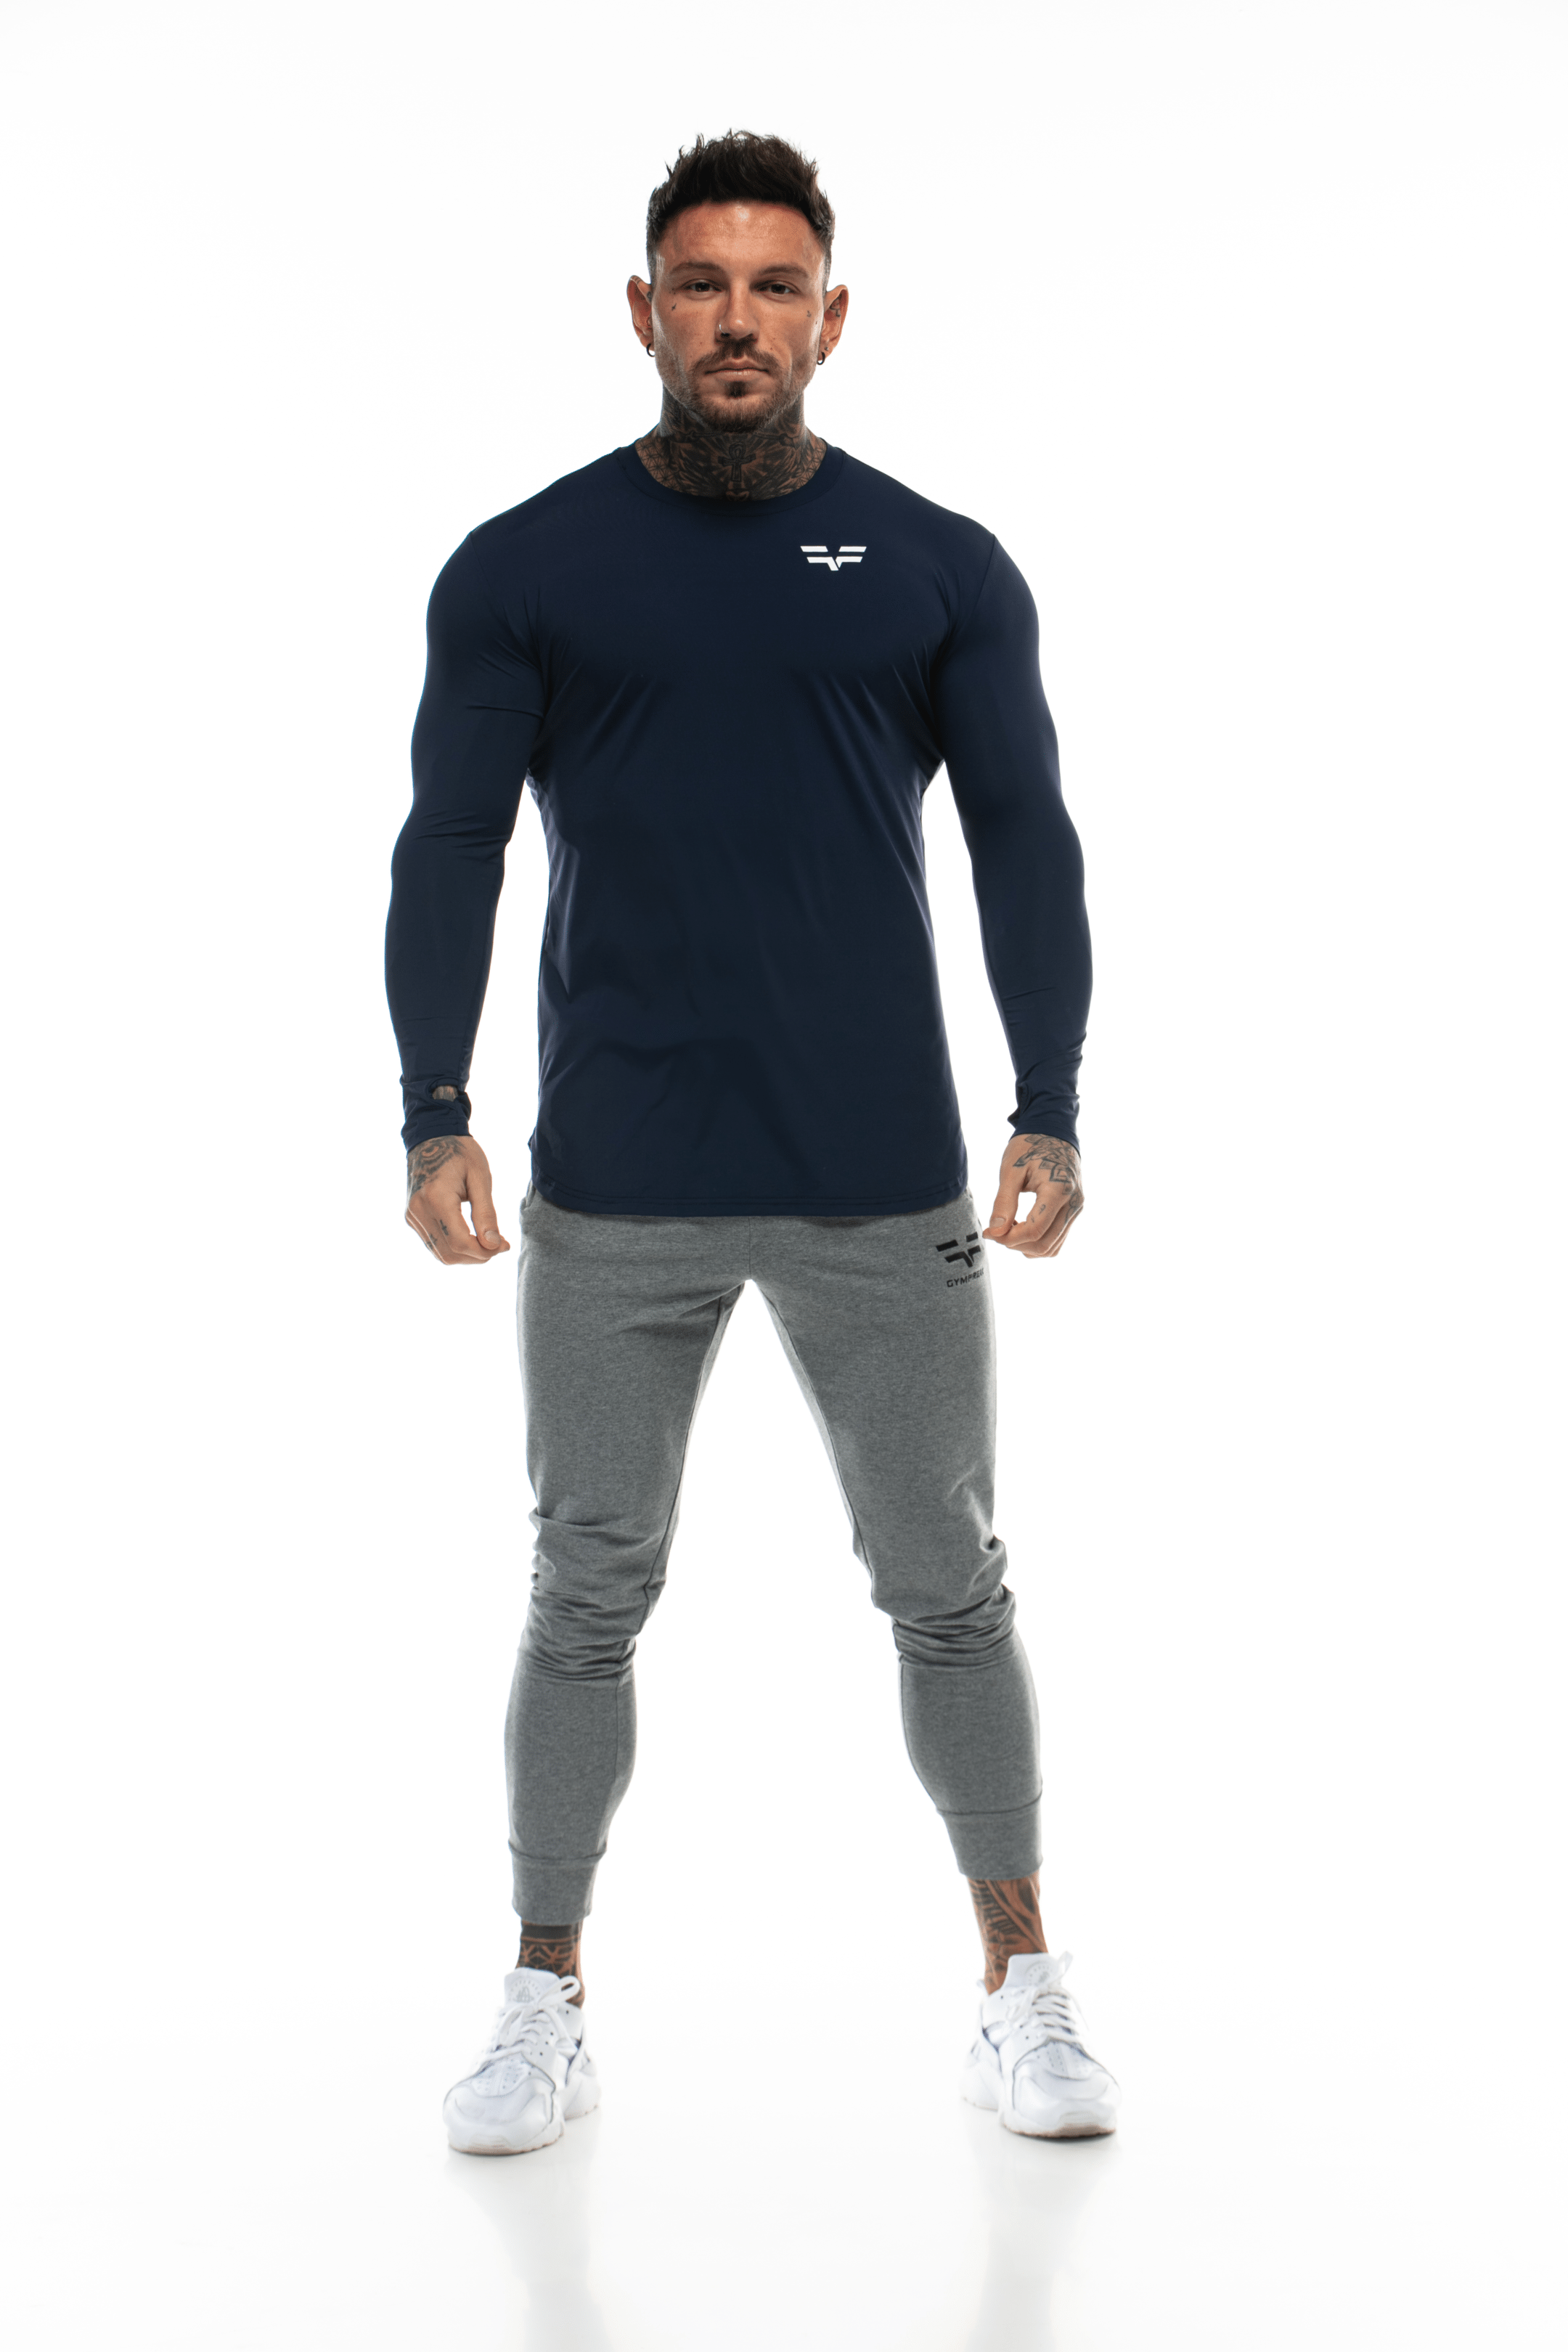 GymFreak Mens Long Sleeve Active T-shirt - Blue